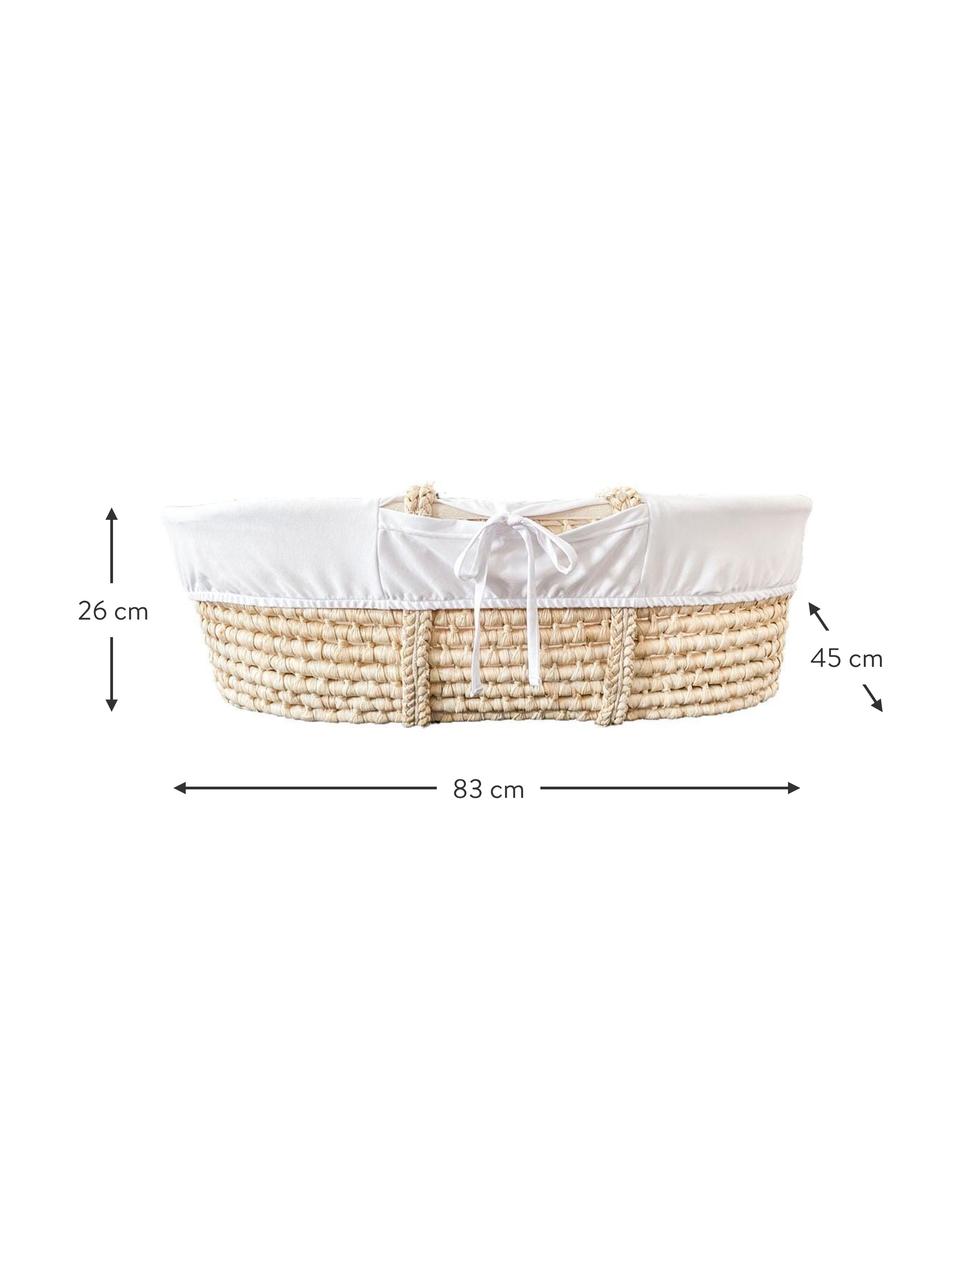 Baby-Korb Moses mit Matratze und Baumwollbezug, 3-tlg., Korb: Naurfaser, Beige, Weiß, B 83 x H 26 cm